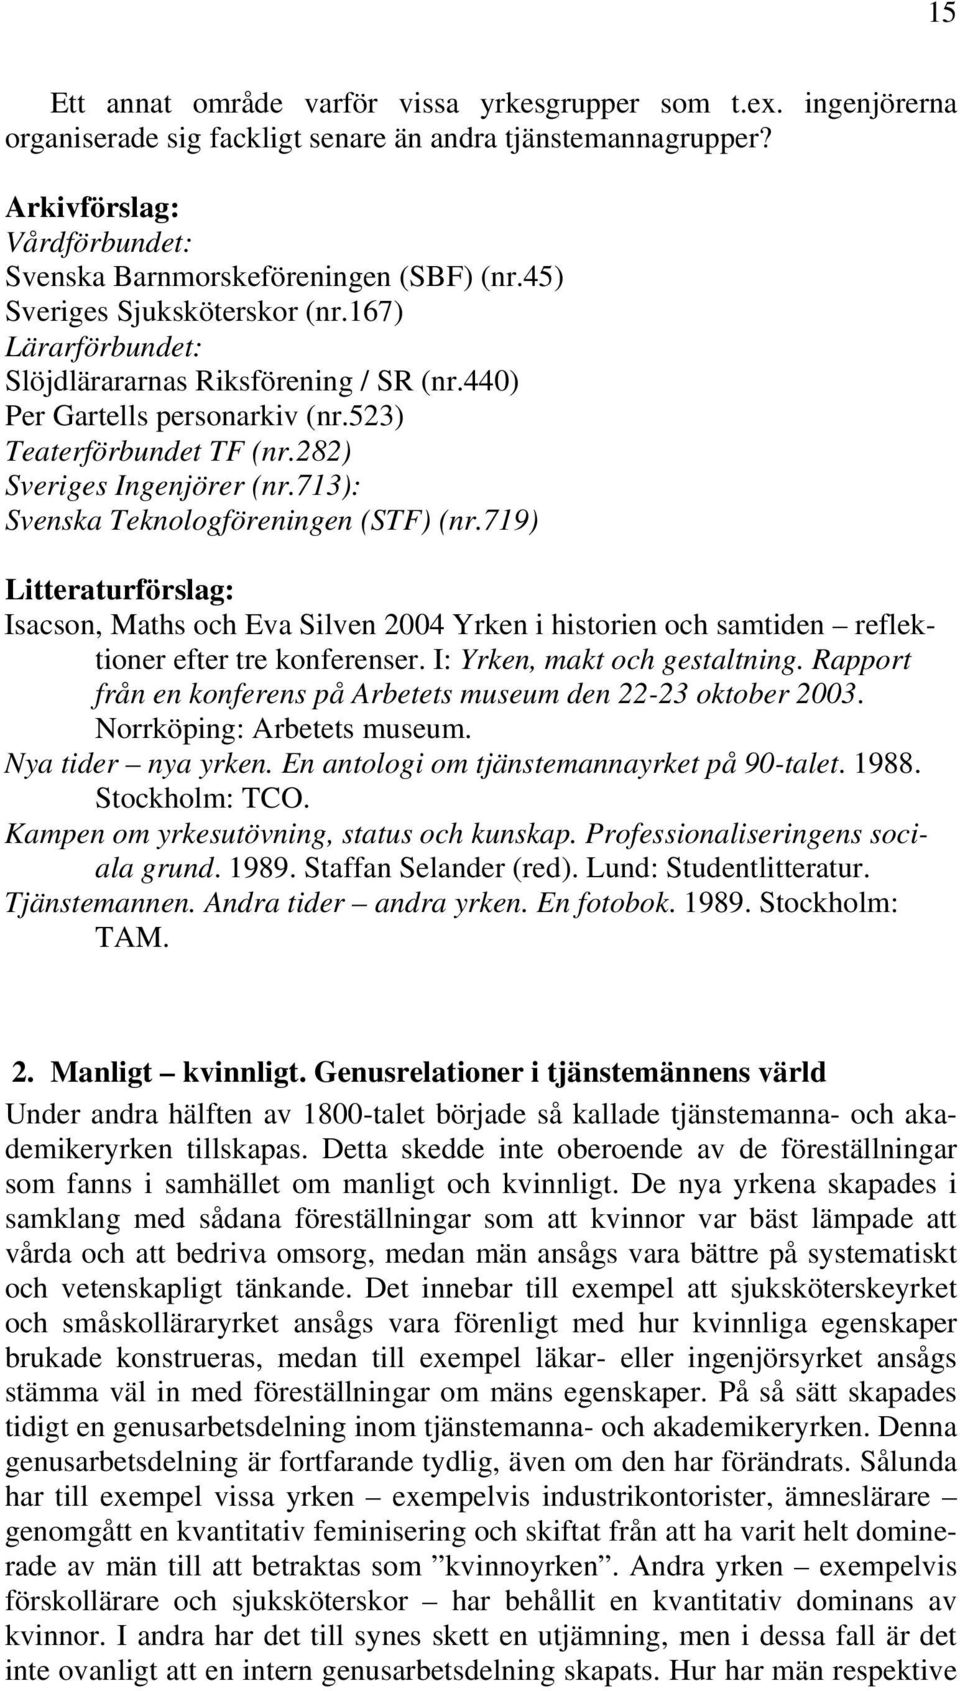 713): Svenska Teknologföreningen (STF) (nr.719) Isacson, Maths och Eva Silven 2004 Yrken i historien och samtiden reflektioner efter tre konferenser. I: Yrken, makt och gestaltning.